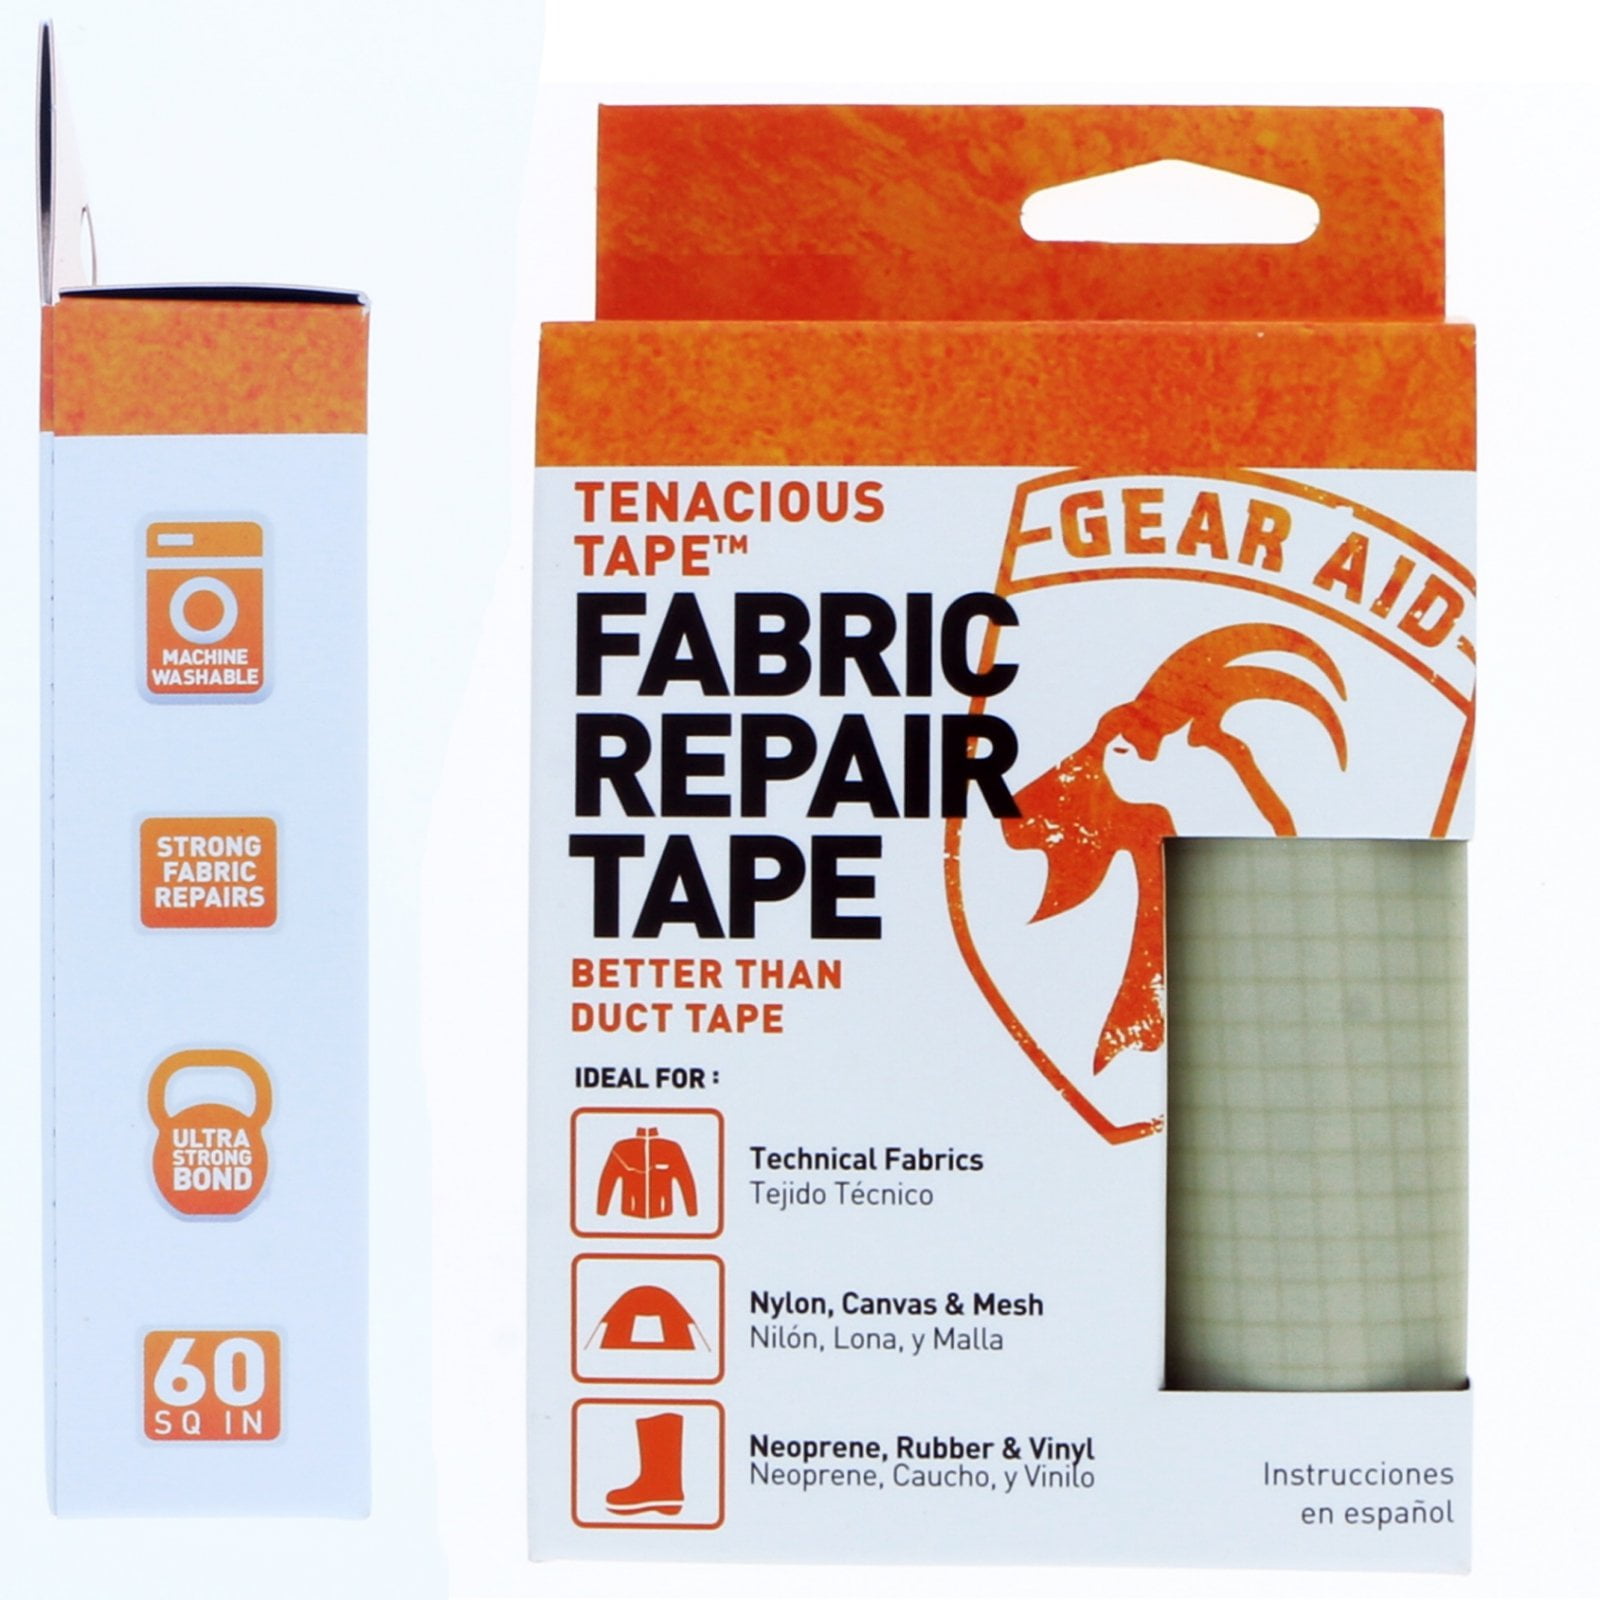 GEAR AID Tenacious Tape Repair Tape - Great Outdoor Shop